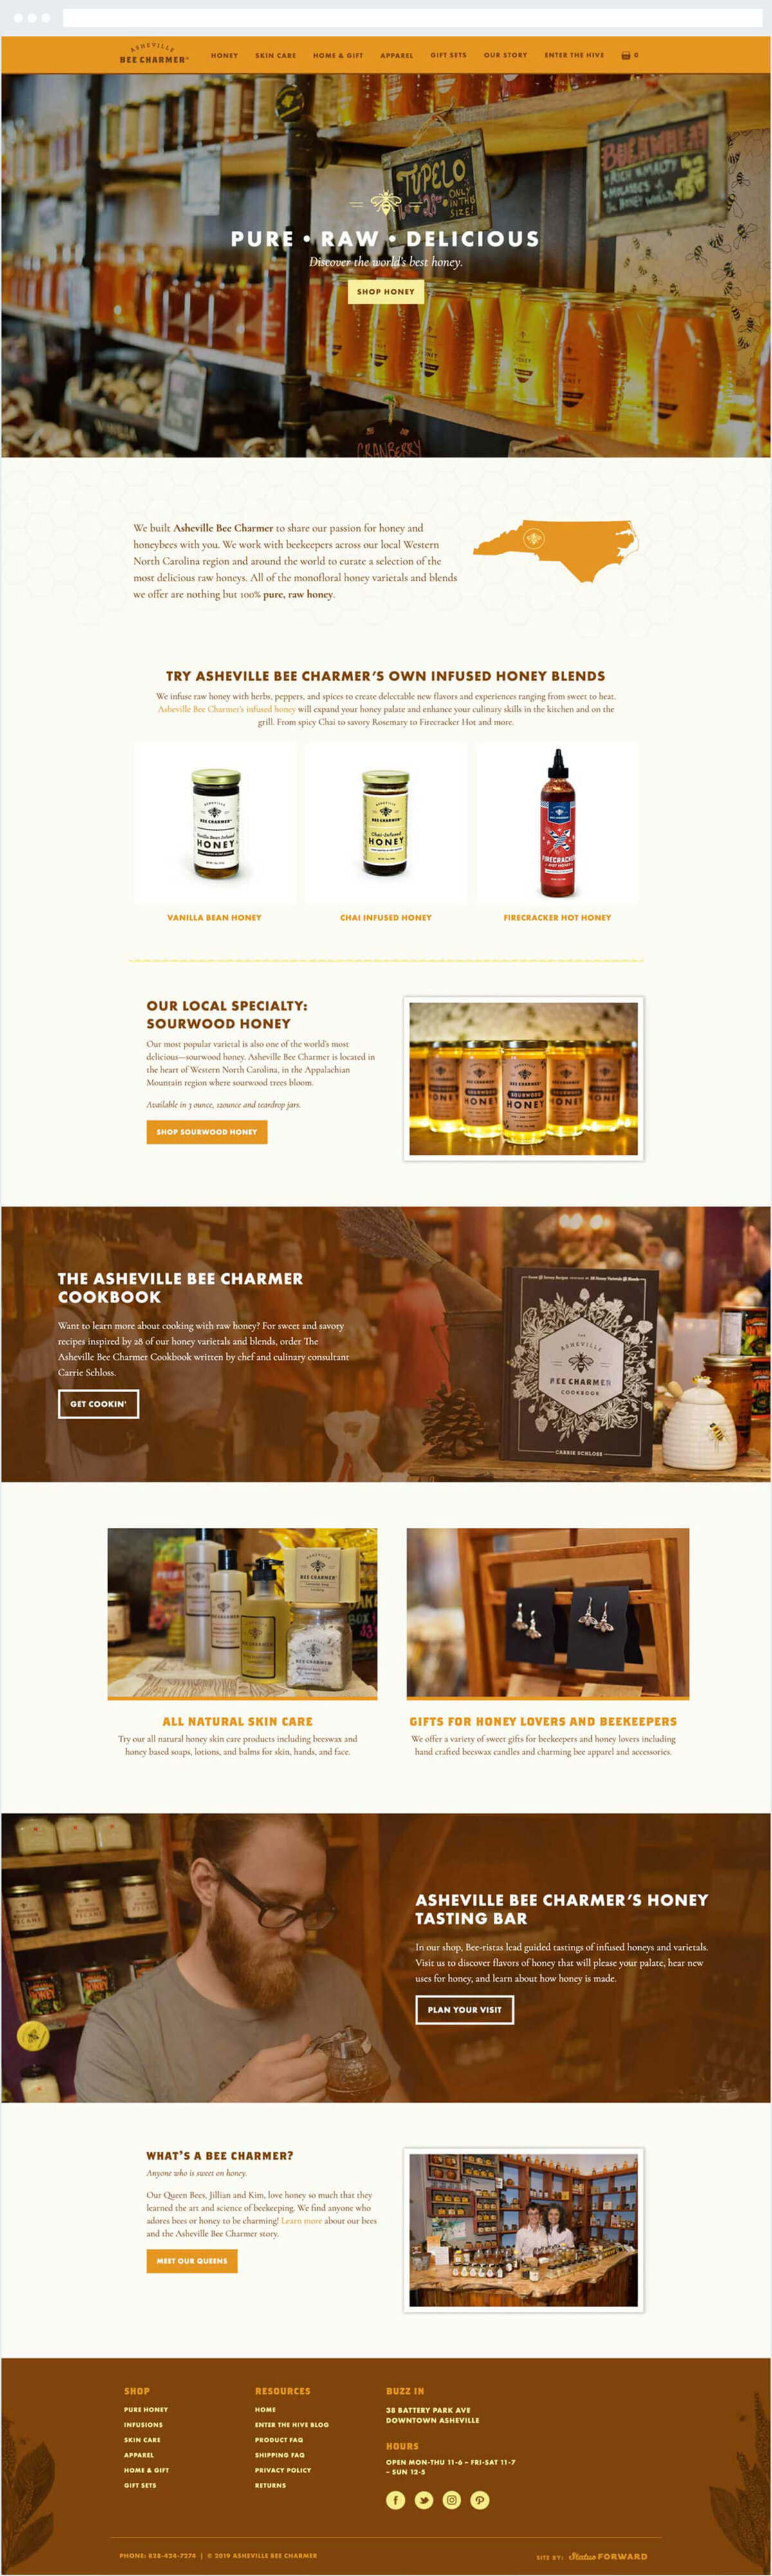 New Website Design for Asheville Bee Charmer